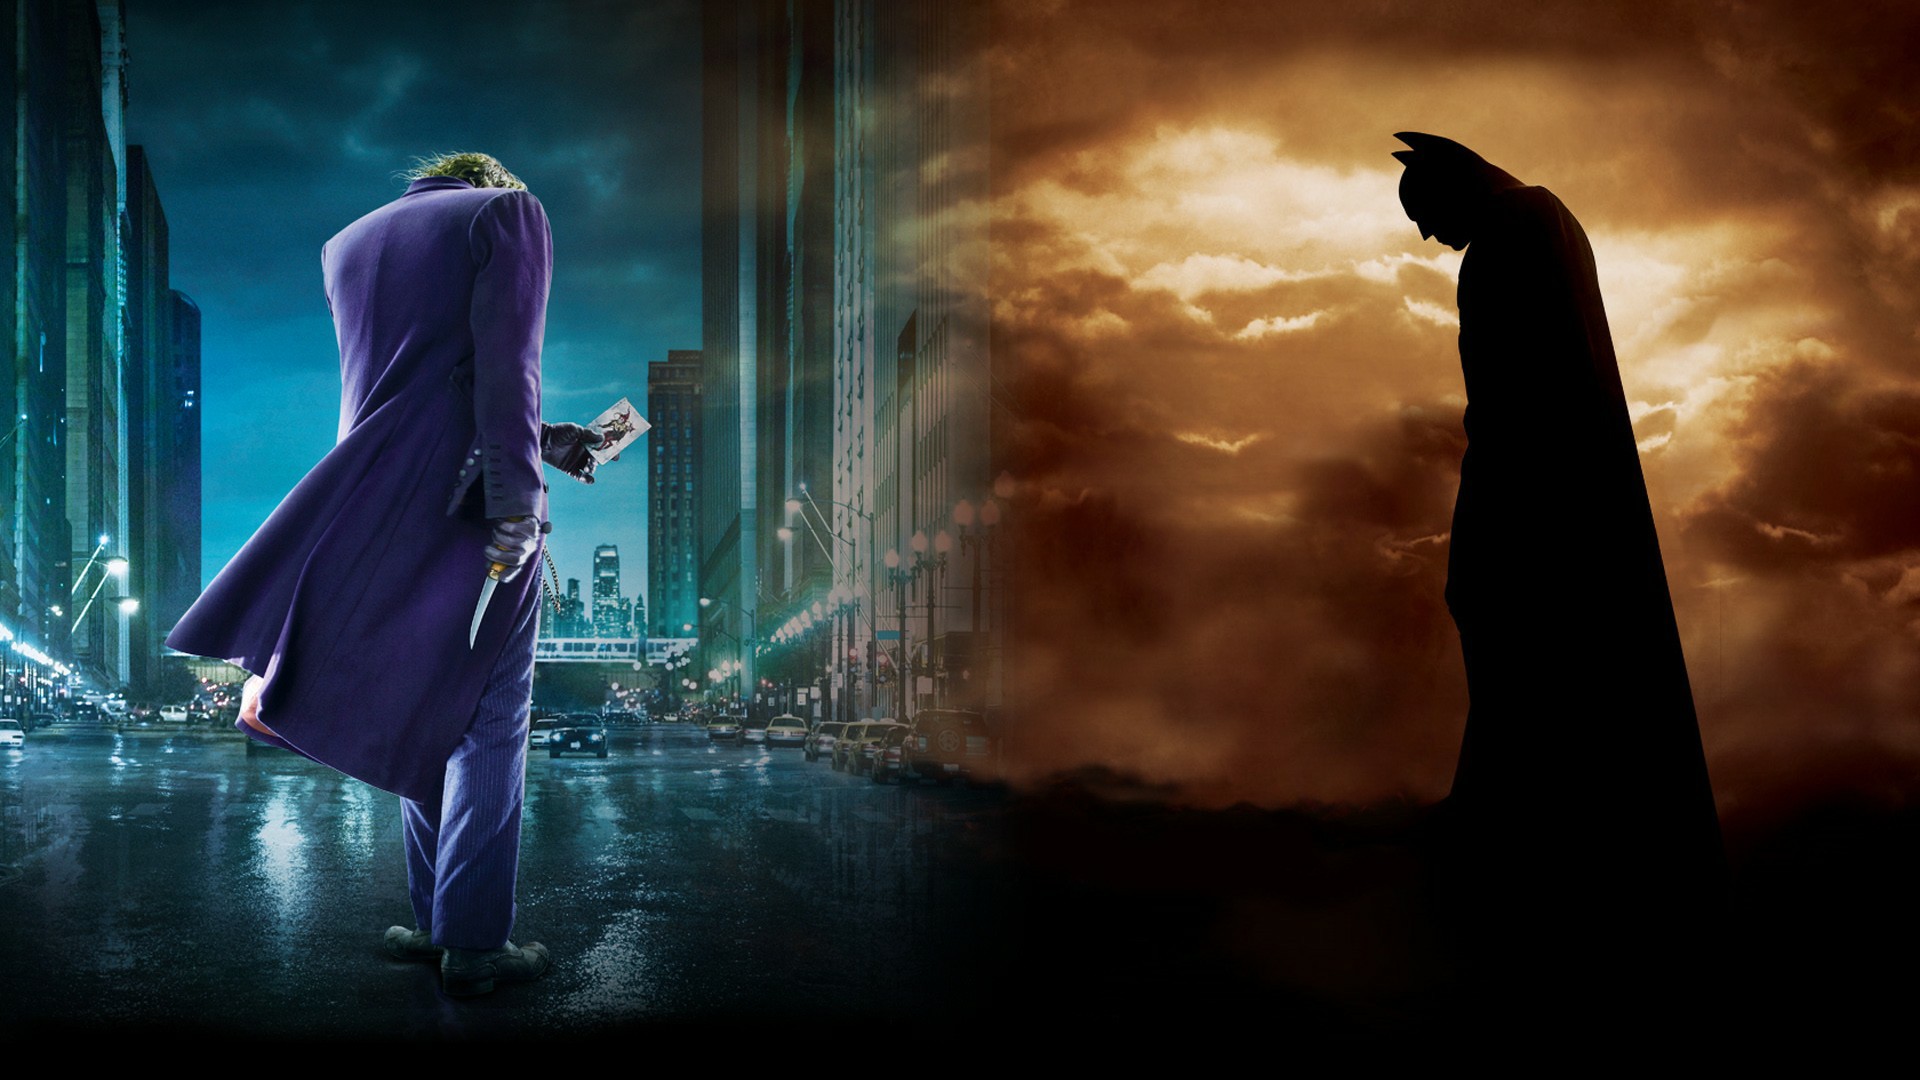 Batman Joker Wallpaper - Joker And Batman Hd , HD Wallpaper & Backgrounds